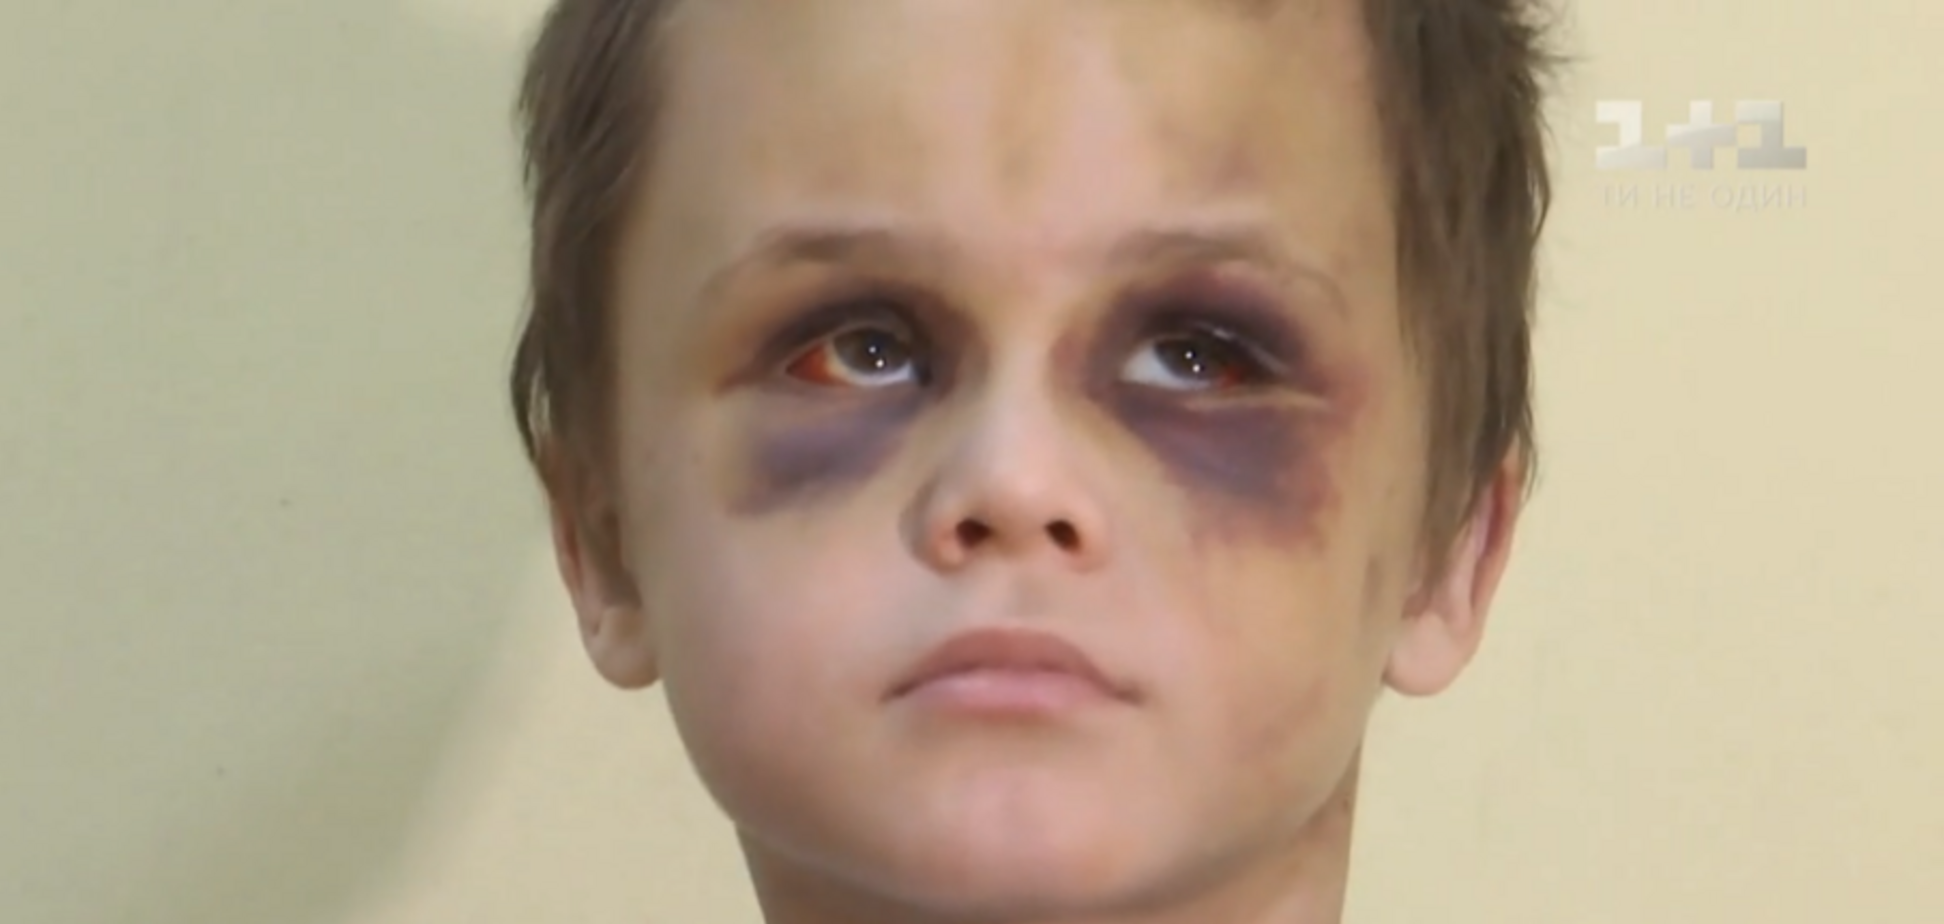 Лицо синее, глаз не видно: родители объяснили зверское избиение ребенка